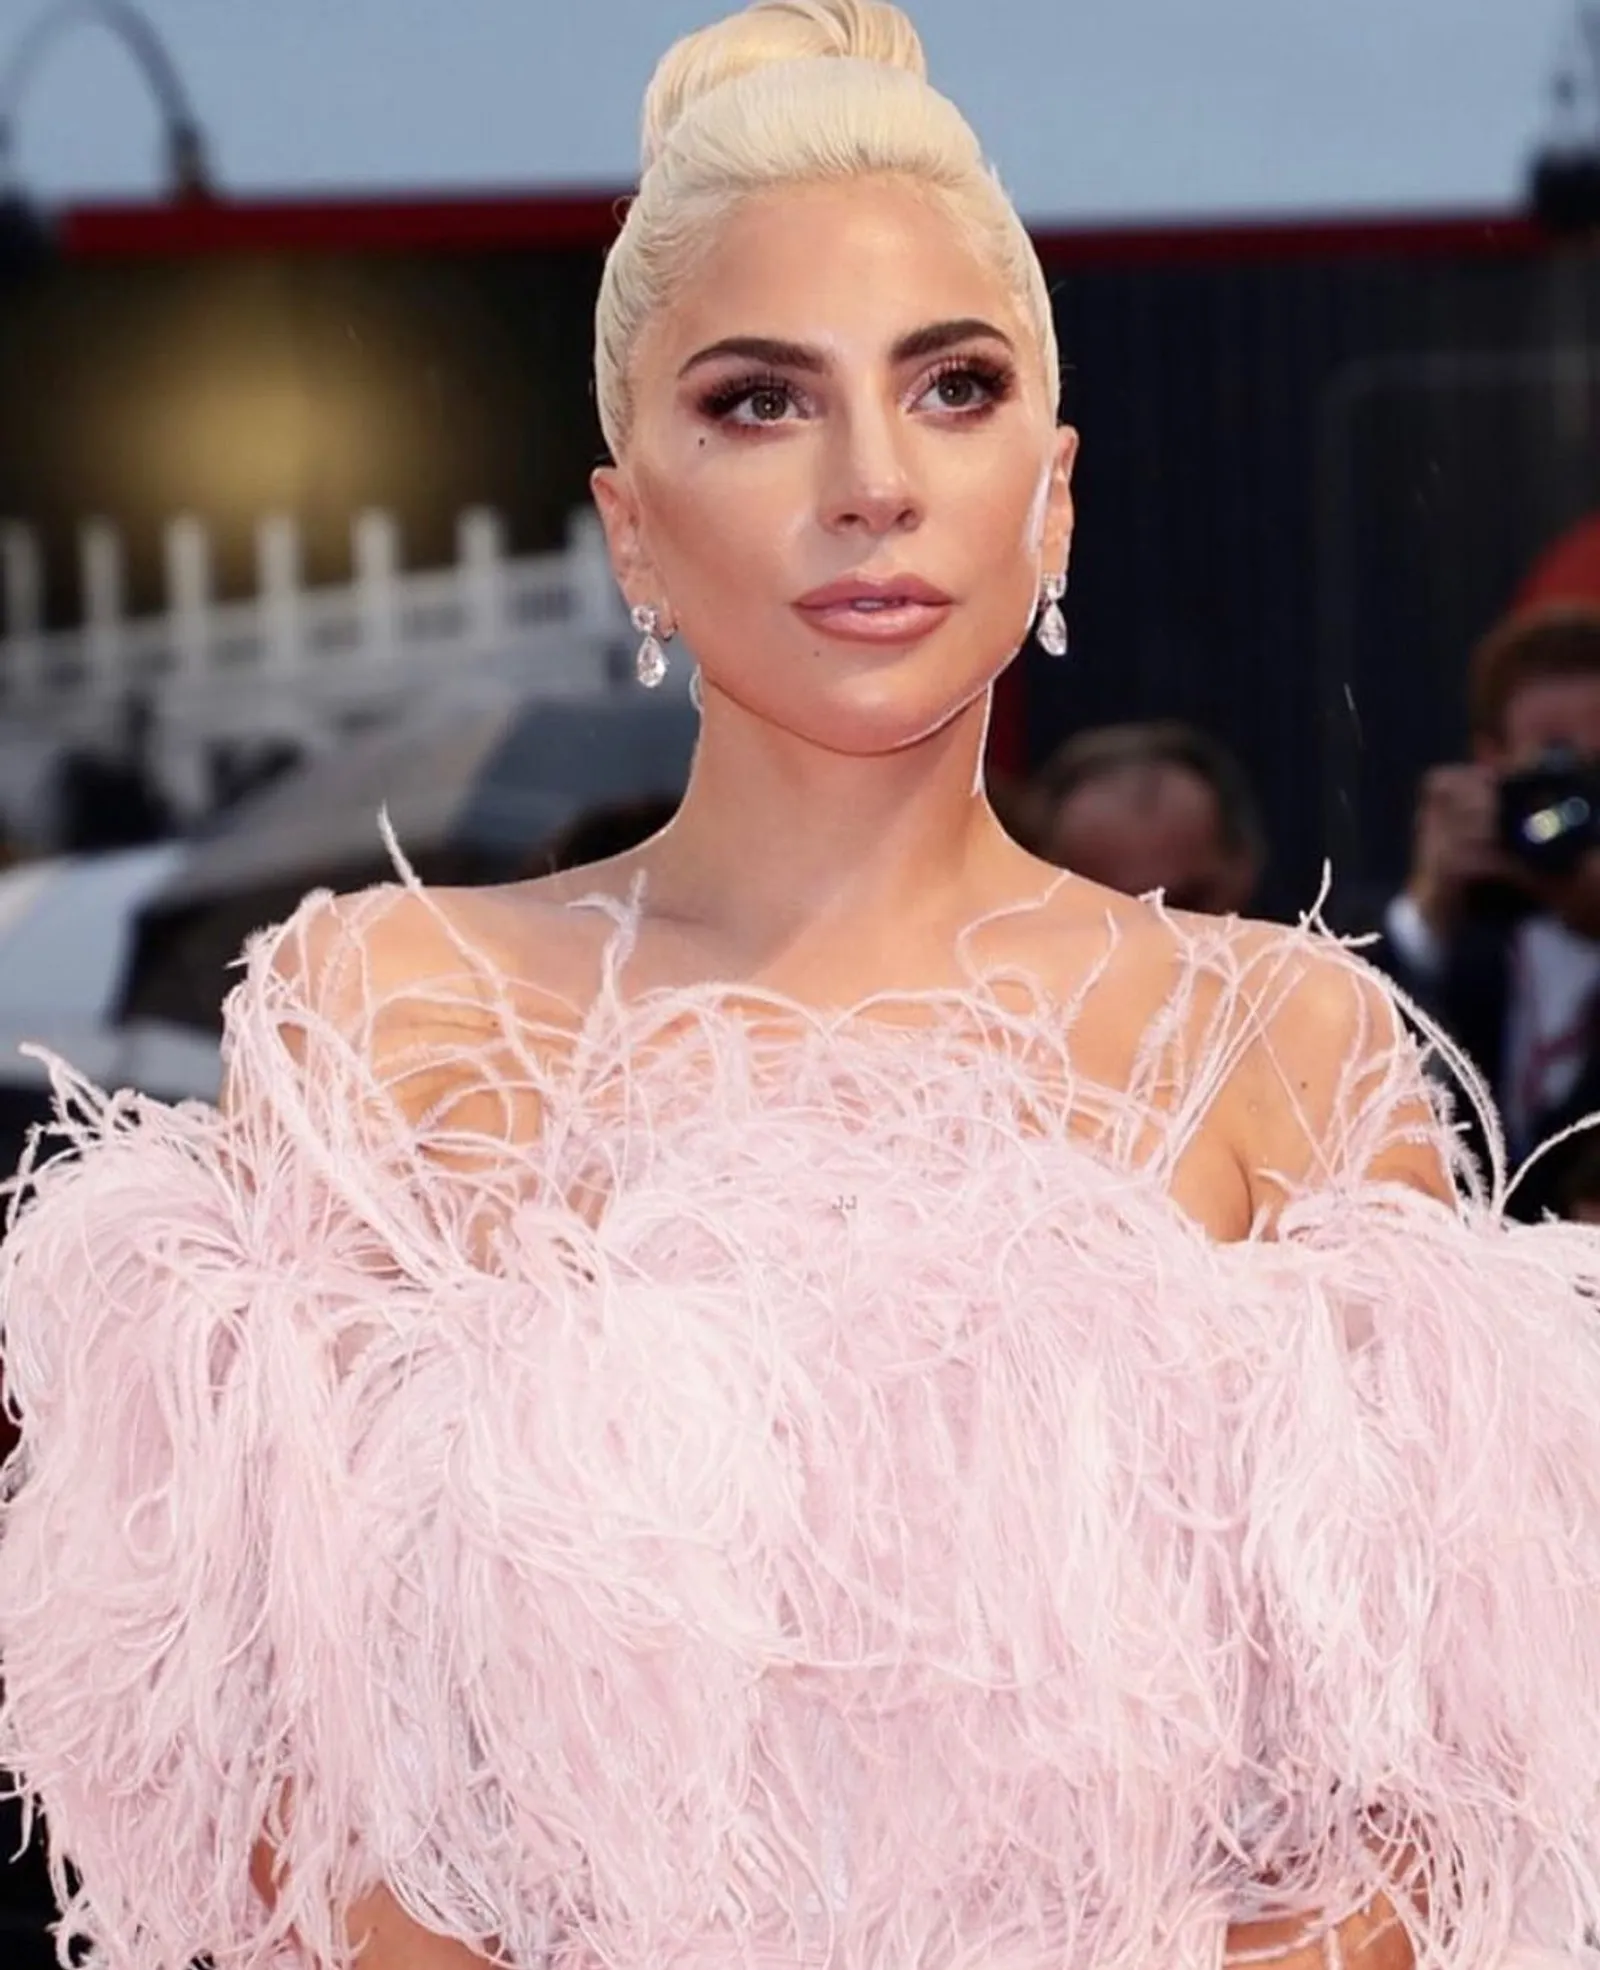 Eksklusif! Tips Makeup A la Artis Hollywood dari MUA Lady Gaga